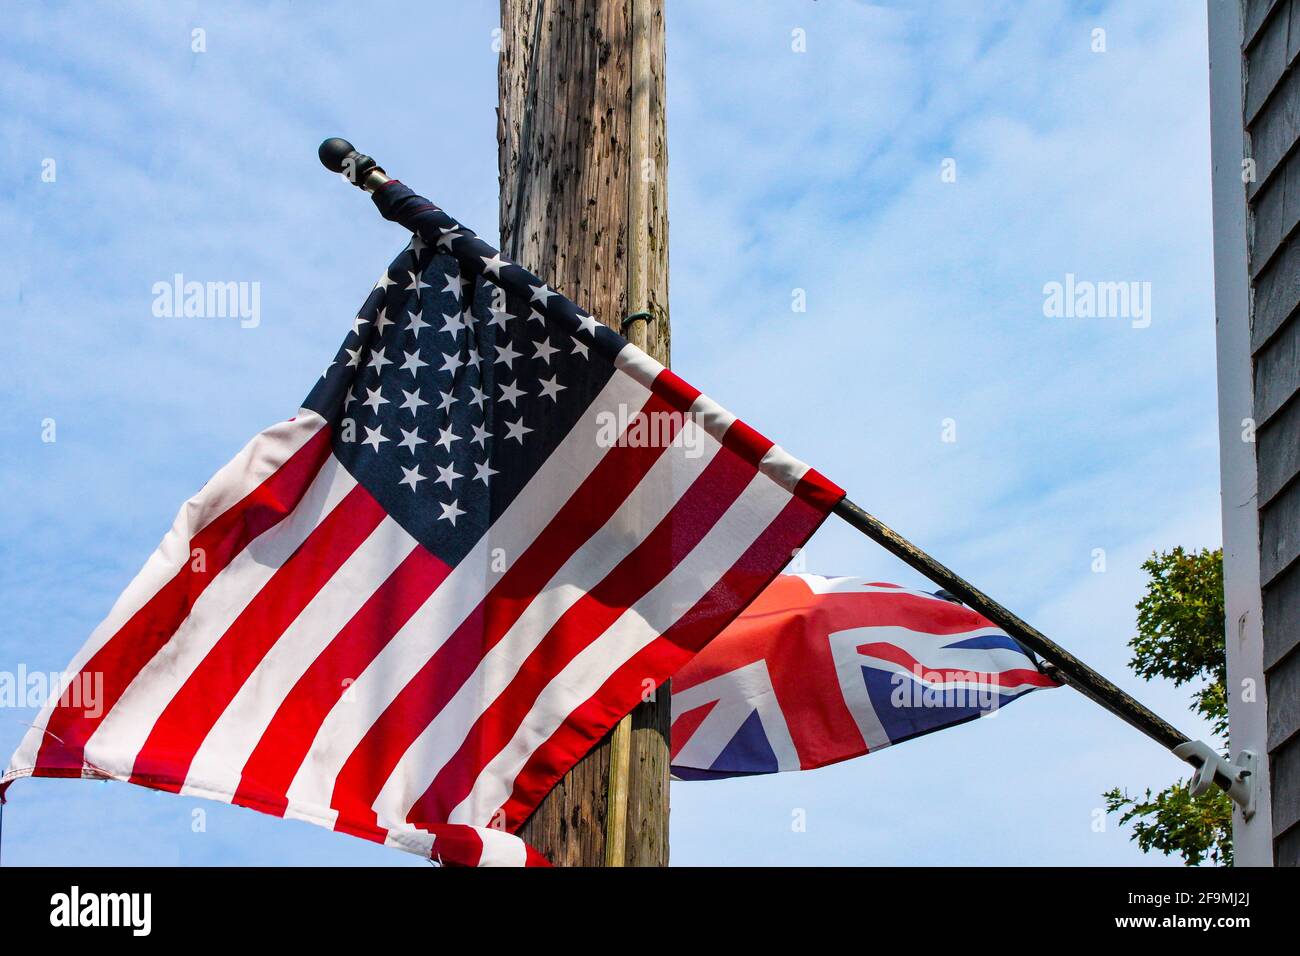 Britische und amerikanische Flaggen fliegen von einem verwitterten Klappbretthaus Vor einem elektrischen Pol und einem blau bewölkten Himmel Stockfoto